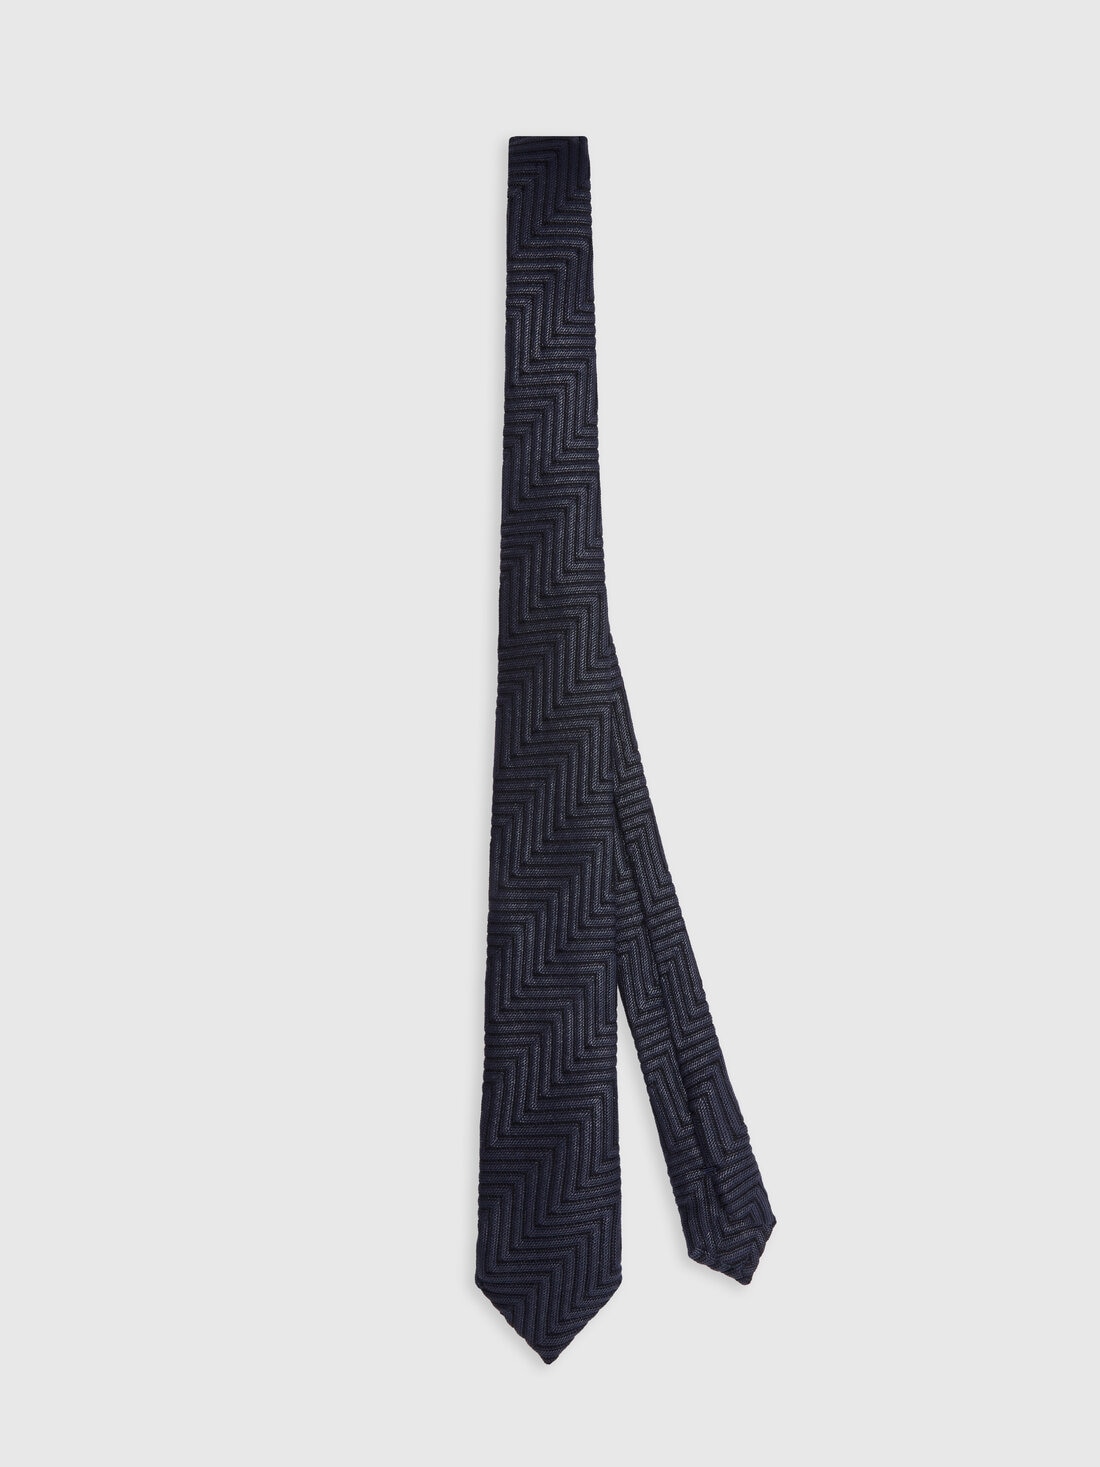 Corbata de algodón y viscosa con motivo de espigas, Multicolor  - 8053147141824 - 0